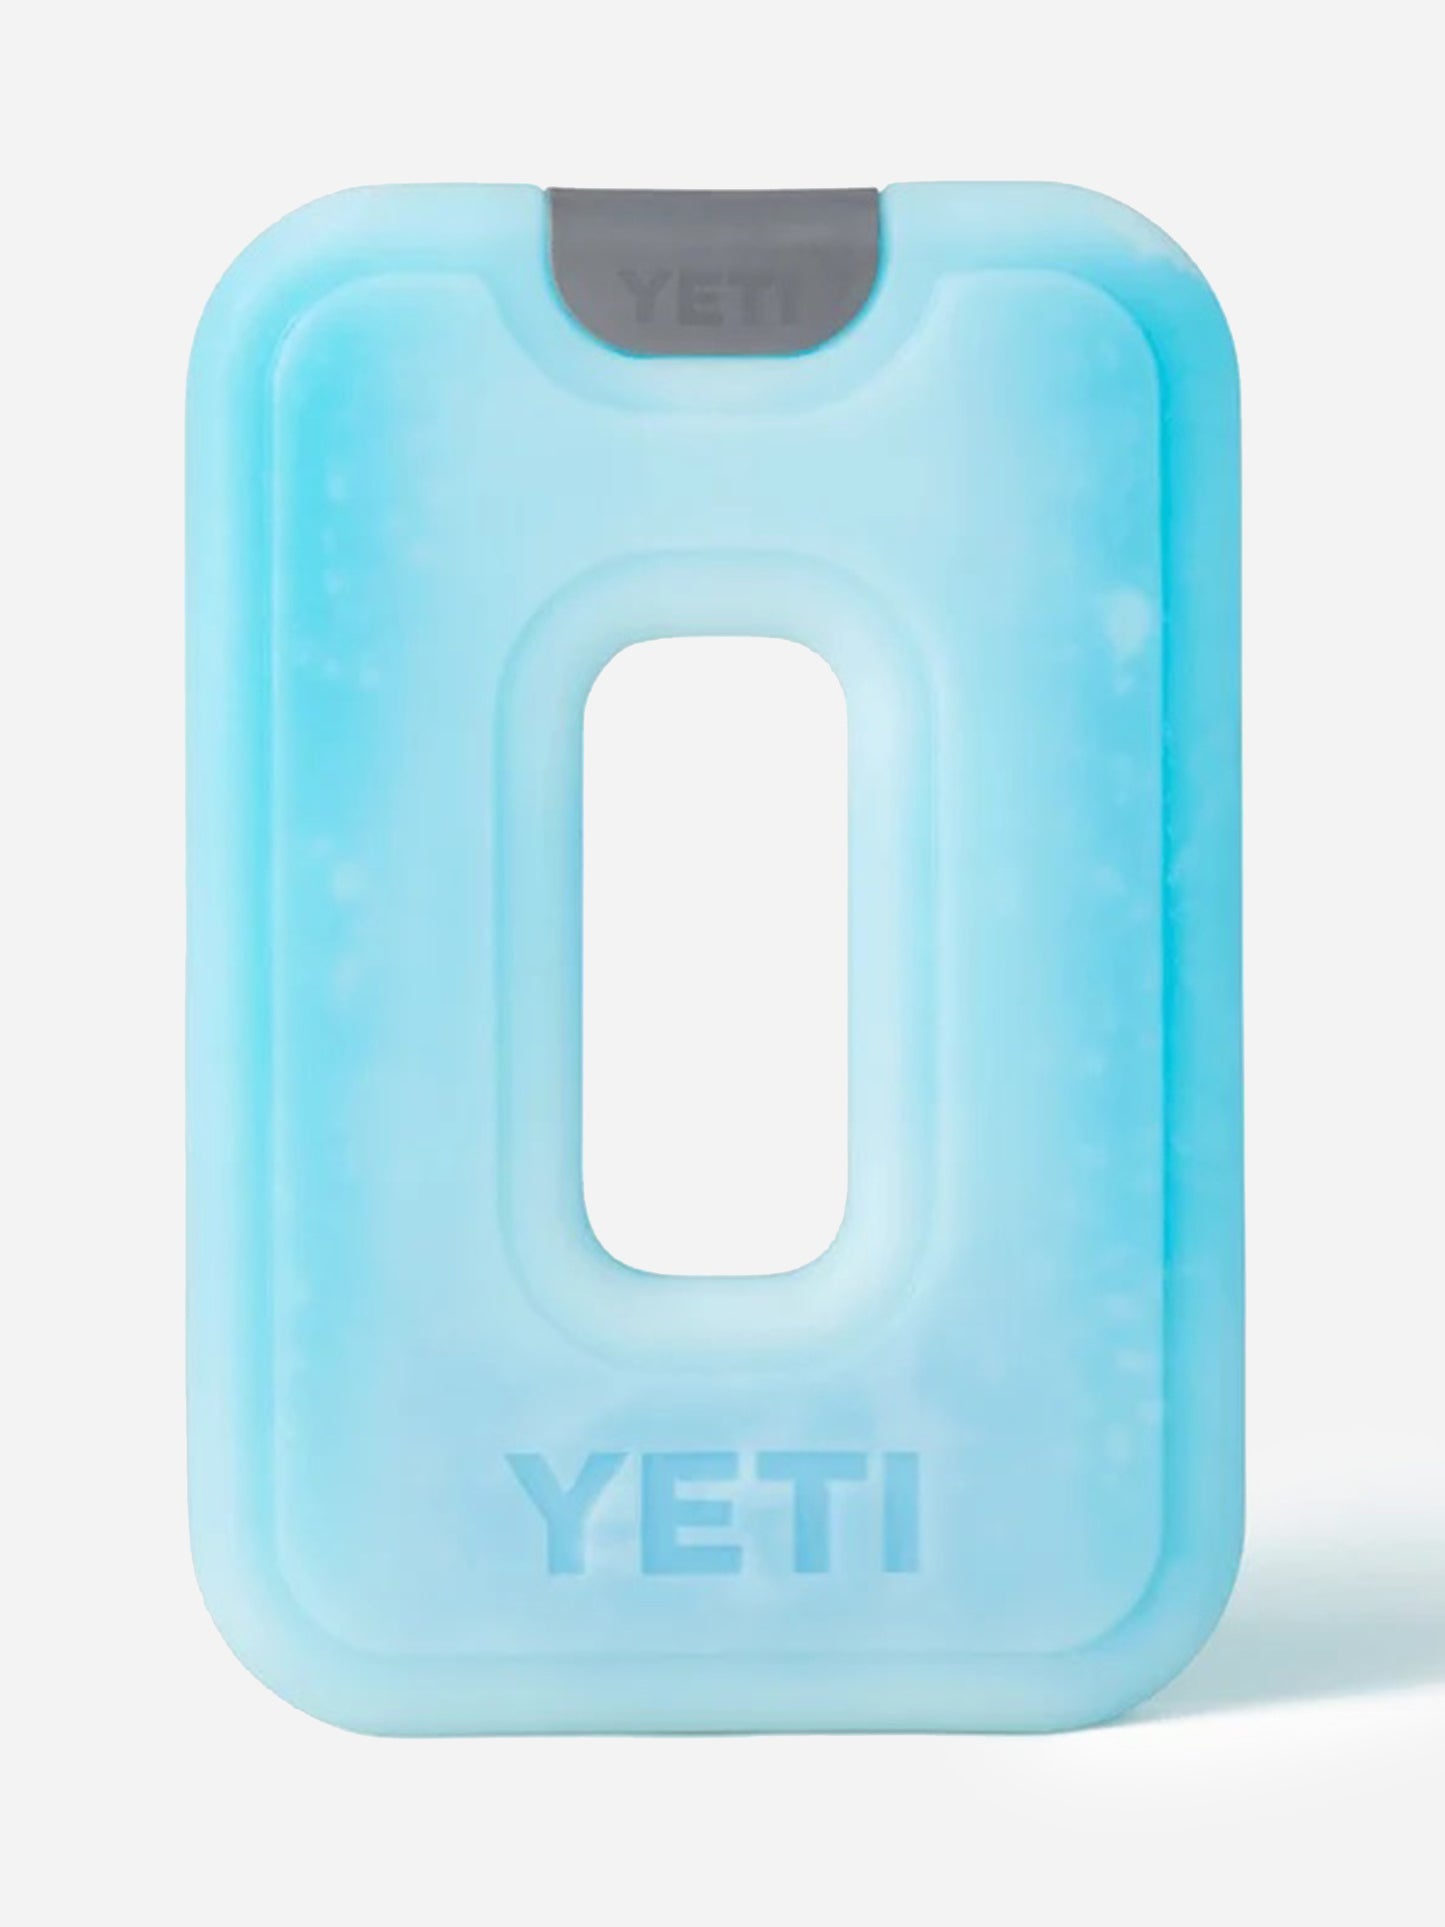 Yeti Coolers' Thin Ice - Medium